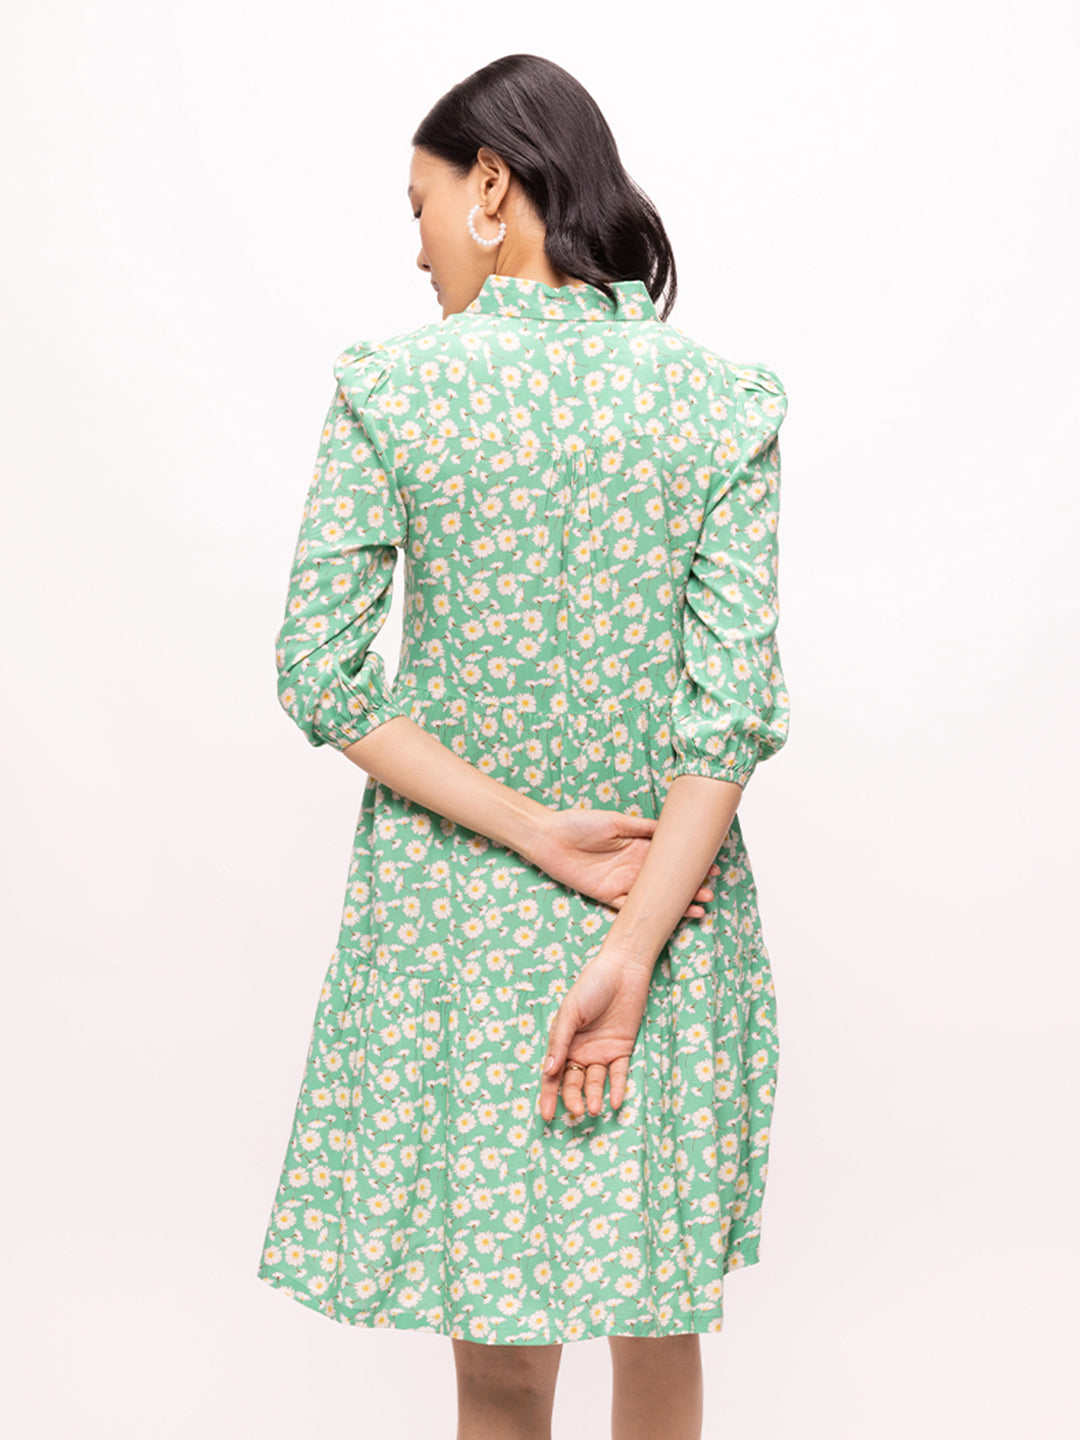 Bombay High Women's Light Green Floral Print Short Length Tiered Dress